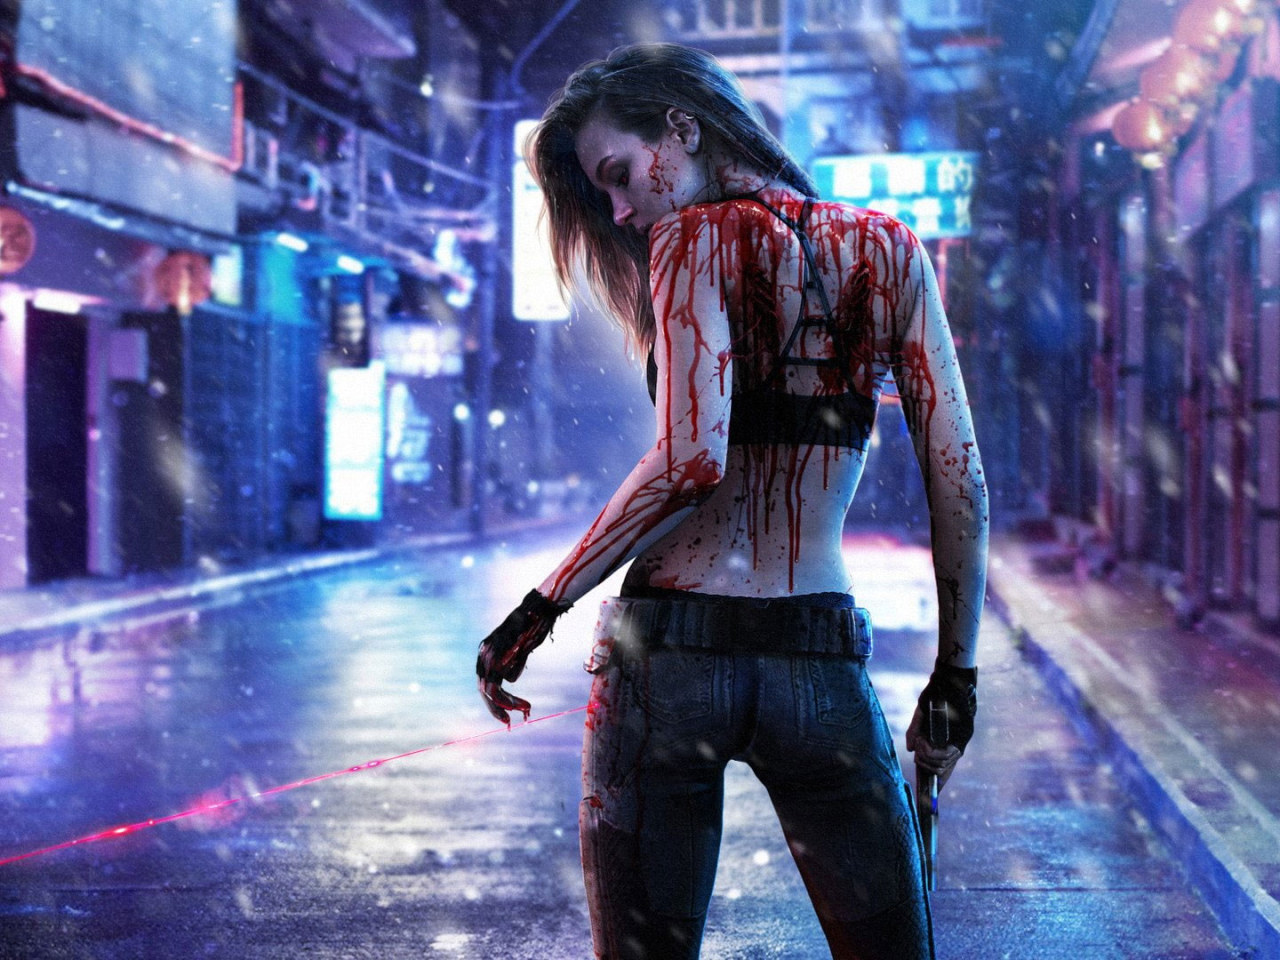 Cyberpunk 2077 Wallpaper, Video Game, Blood, Girl, Gun, Laser, Rain • Wallpaper For You